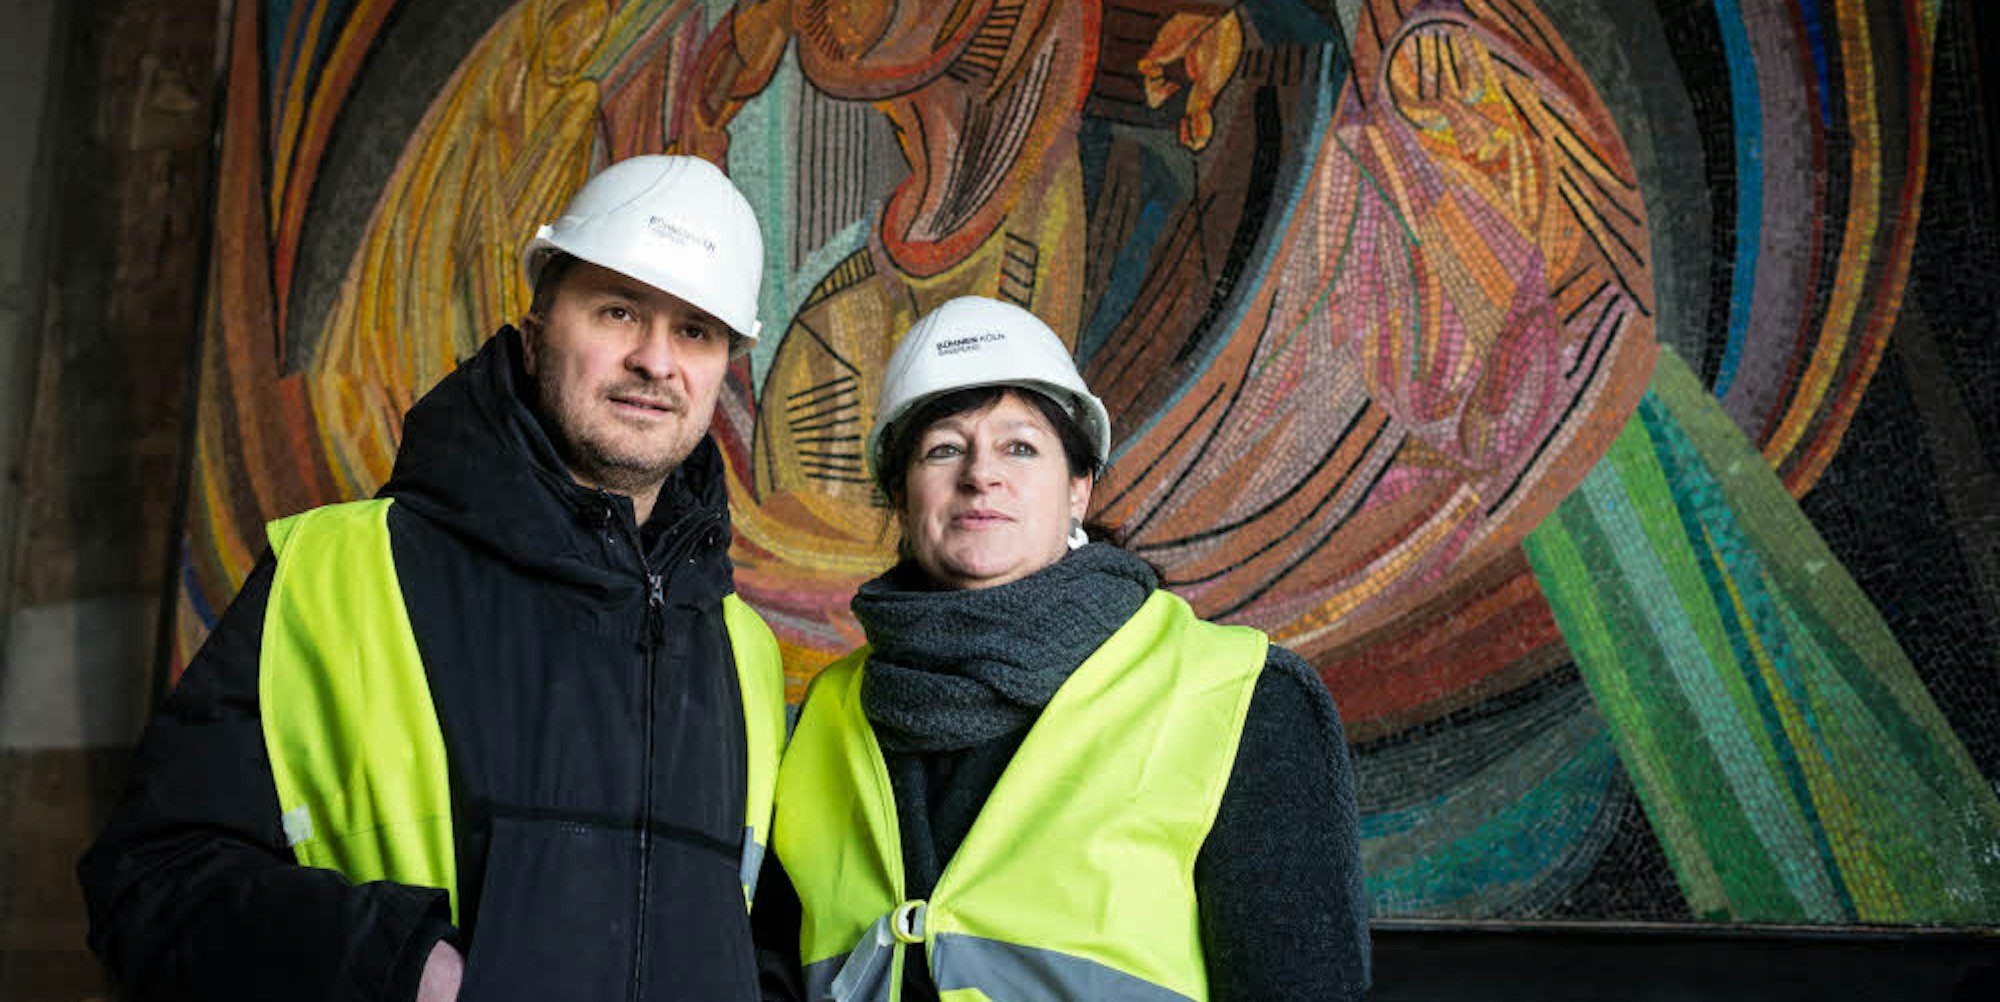 Kulturschaffende in Arbeitermontur: Yilmaz Dziewior, Direktor des Museums Ludwig, und Opernintendantin Birgit Meyer stehen auf der Opernbaustelle vor dem Mosaik von Otto Freundlich.